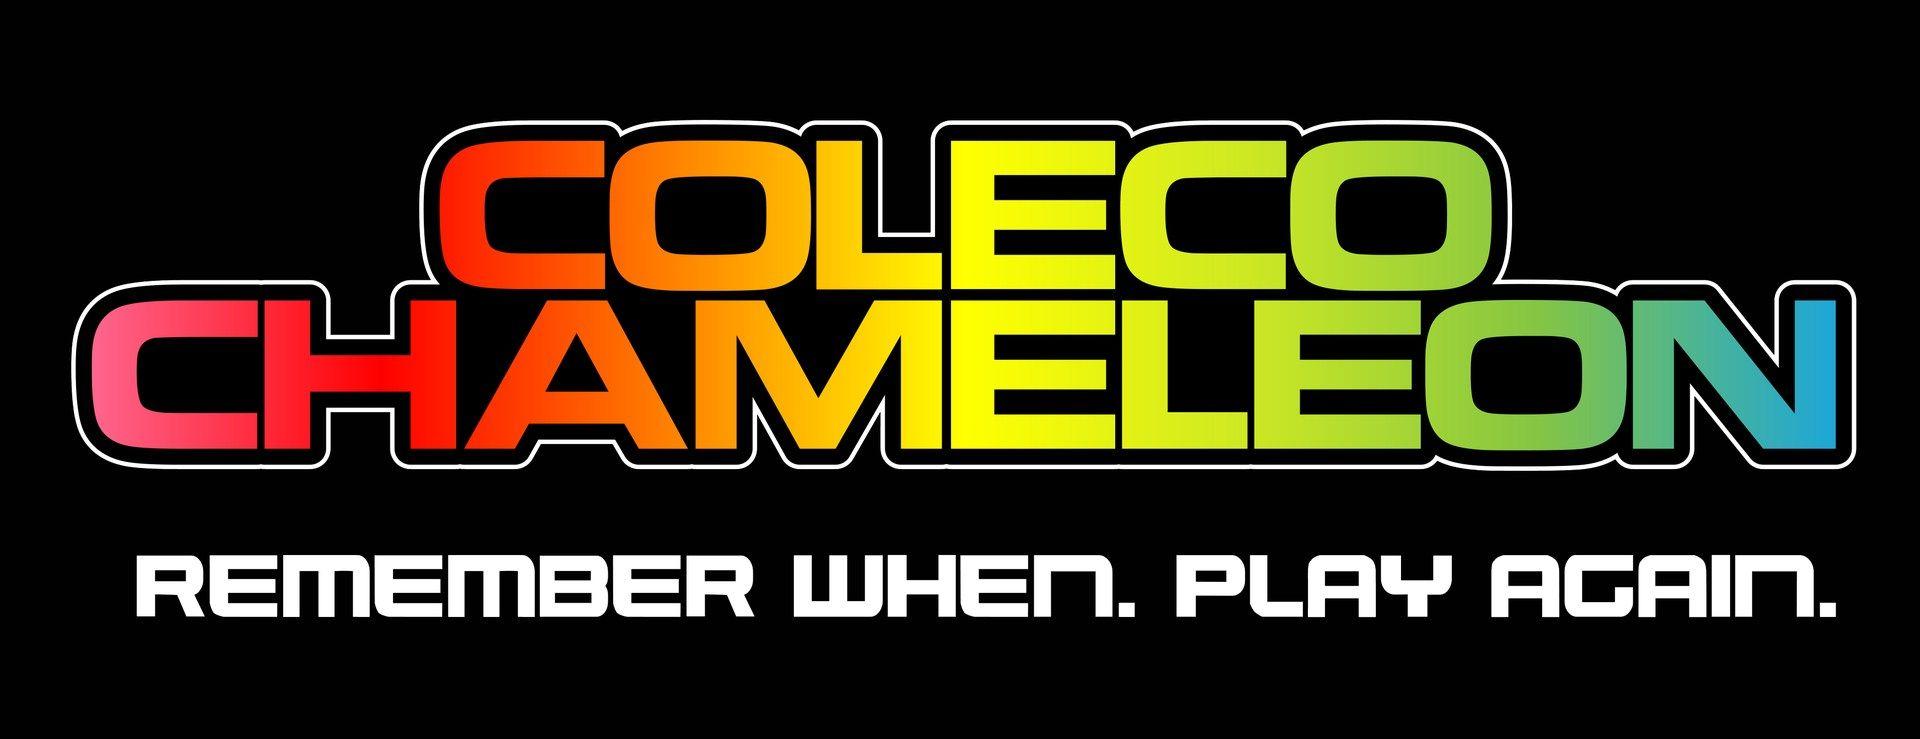 Coleco Logo - chameleon v2 text - Cliqist